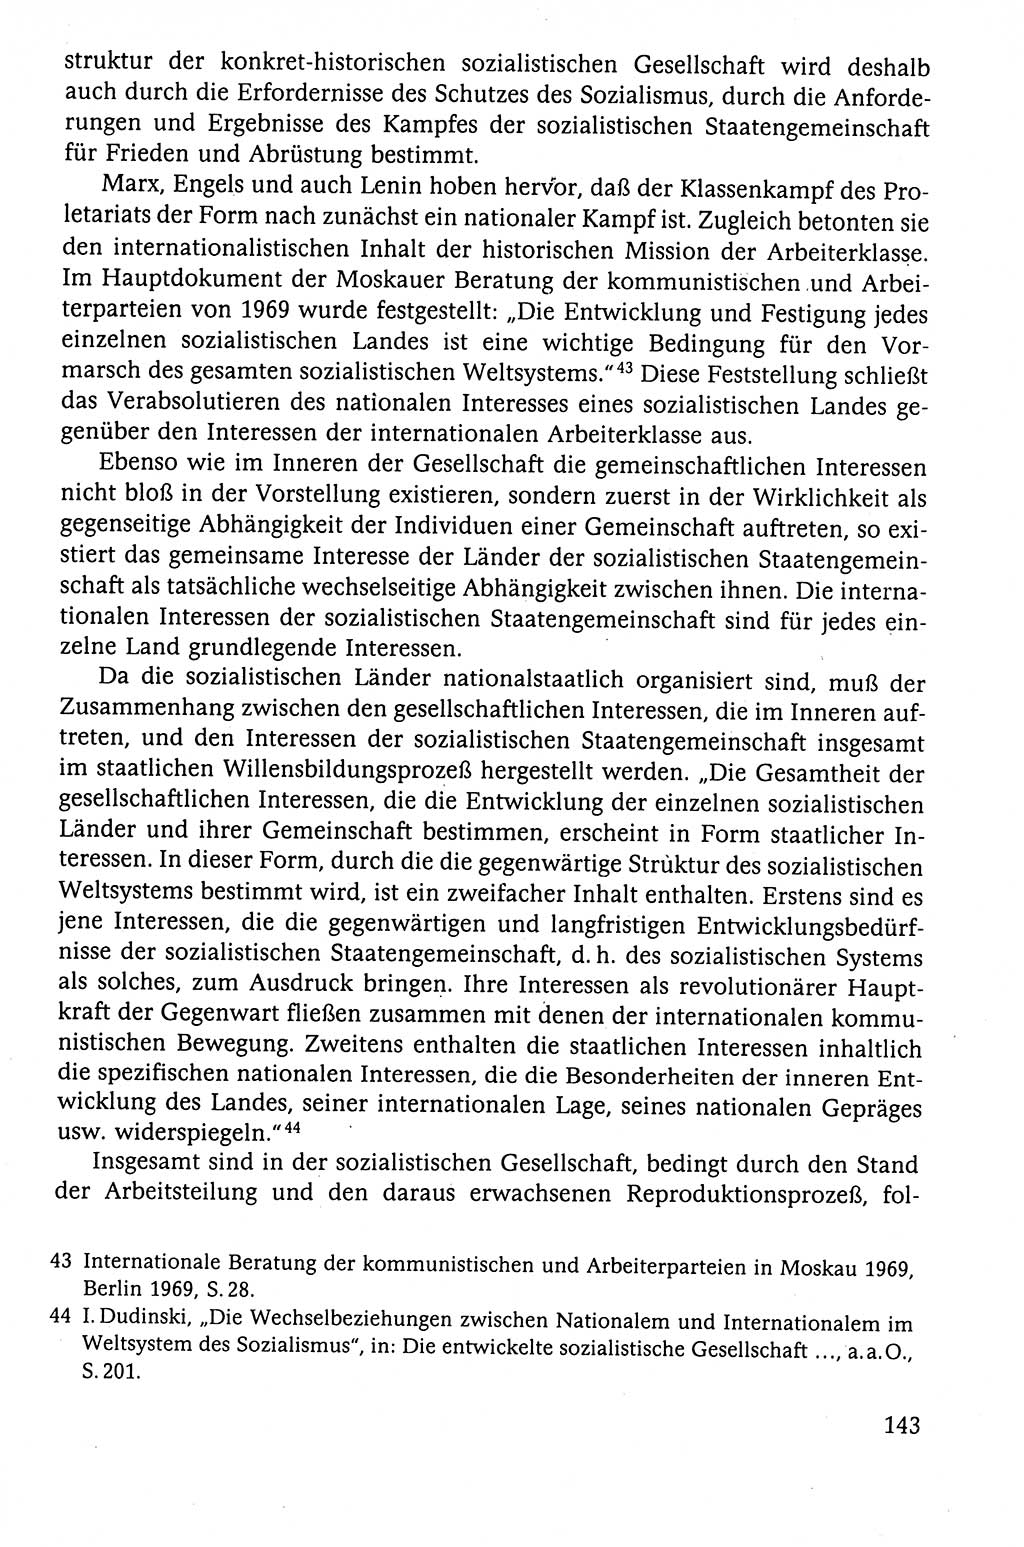 Der Staat im politischen System der DDR (Deutsche Demokratische Republik) 1986, Seite 143 (St. pol. Sys. DDR 1986, S. 143)